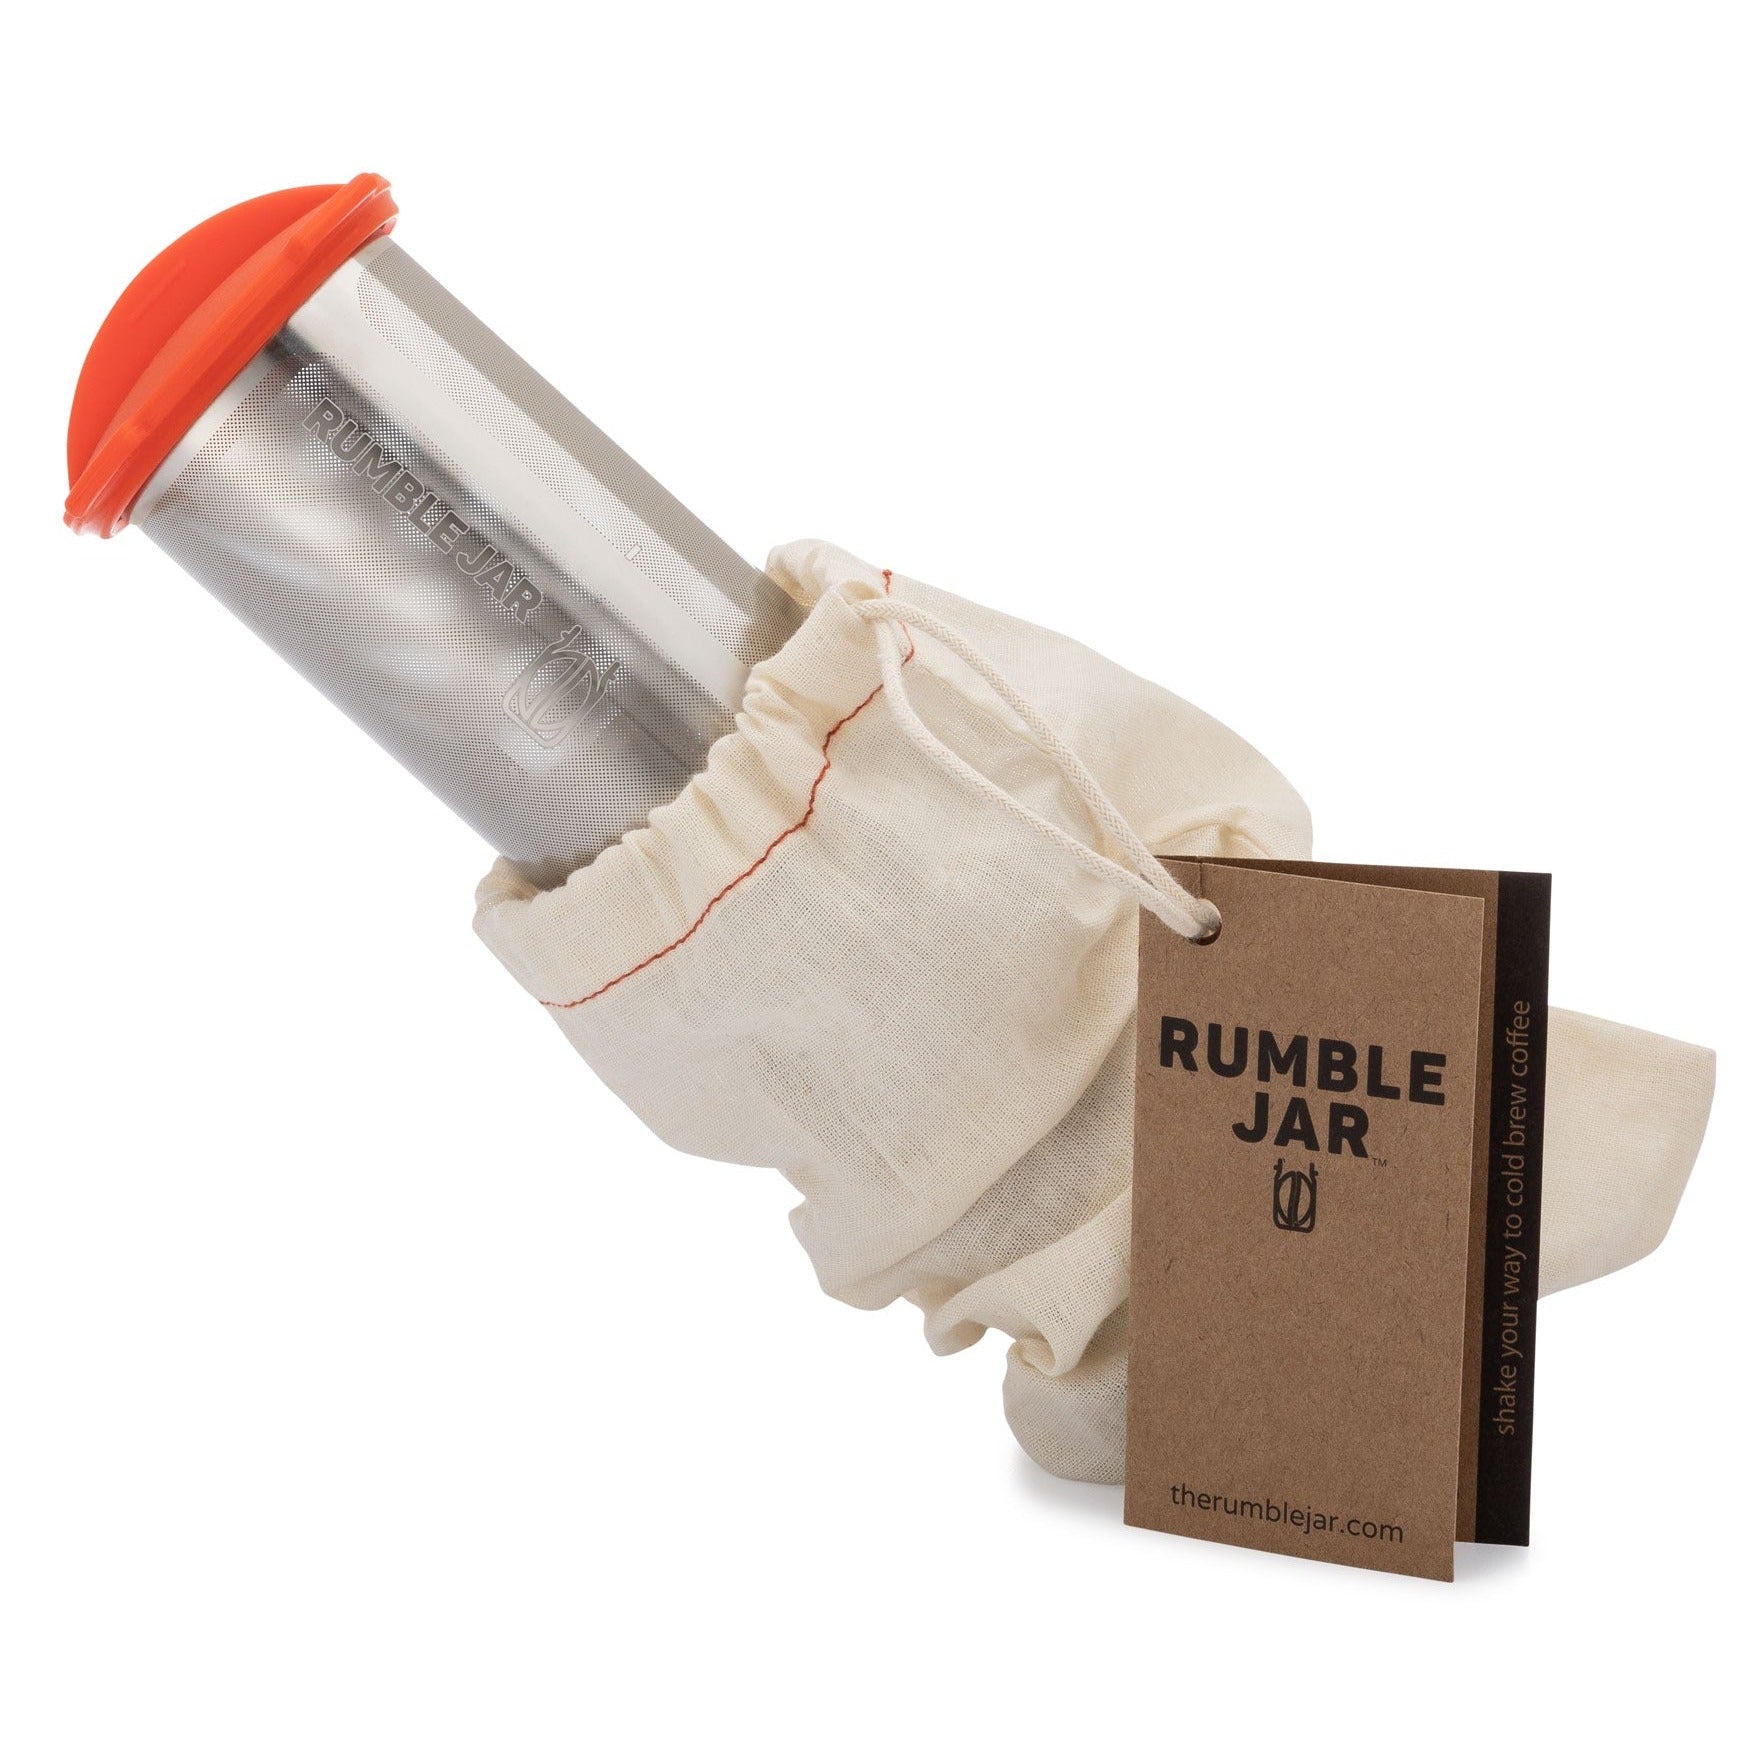 Rumble Jar Rumble Go Review 2020